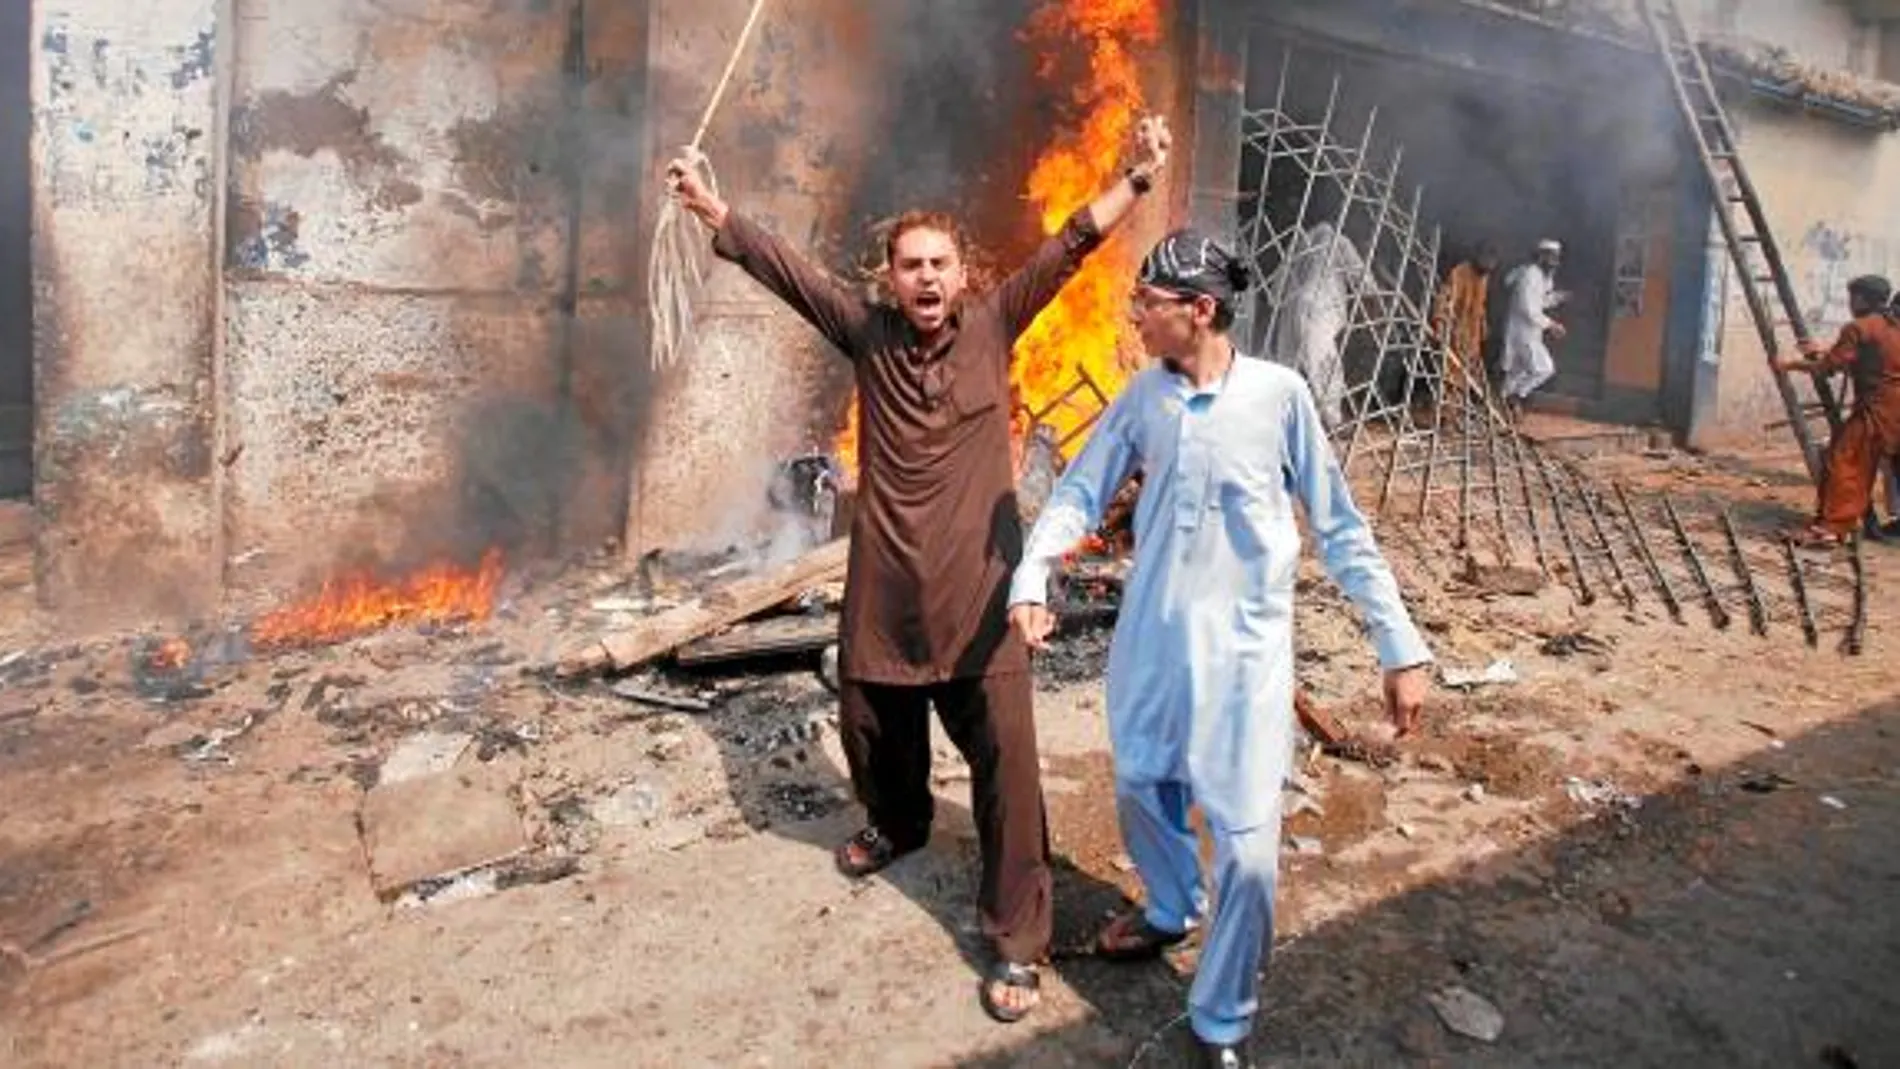 Los manifestantes paquistaníes quemaron varios cines, que quedaron totalmente calcinados